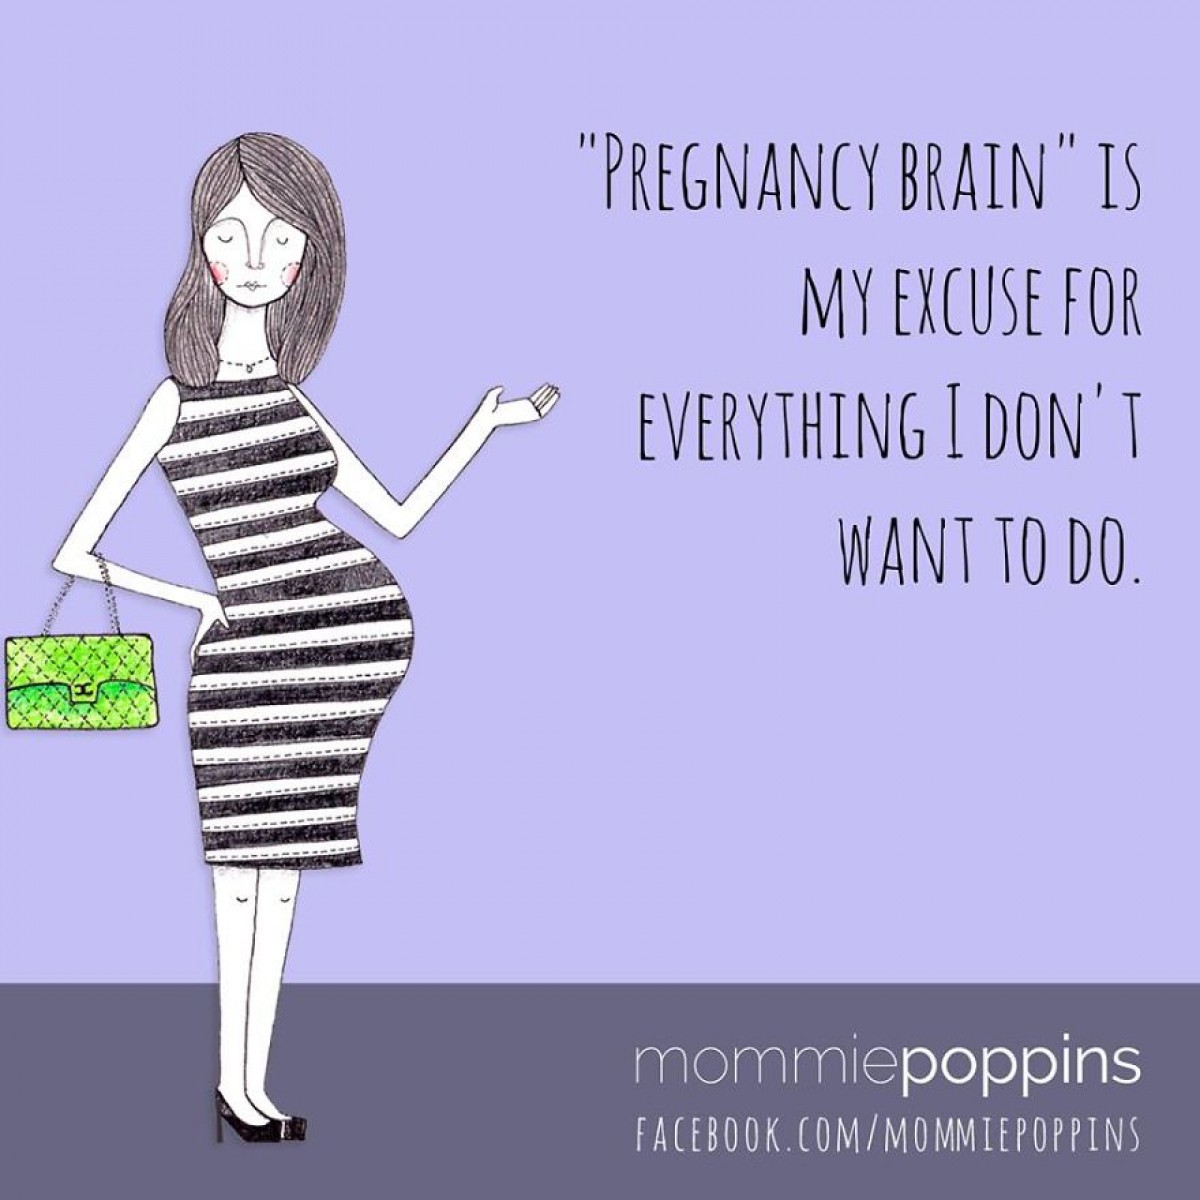 10 αλήθειες για την εγκυμοσύνη με τις οποίες θα ταυτιστείτε